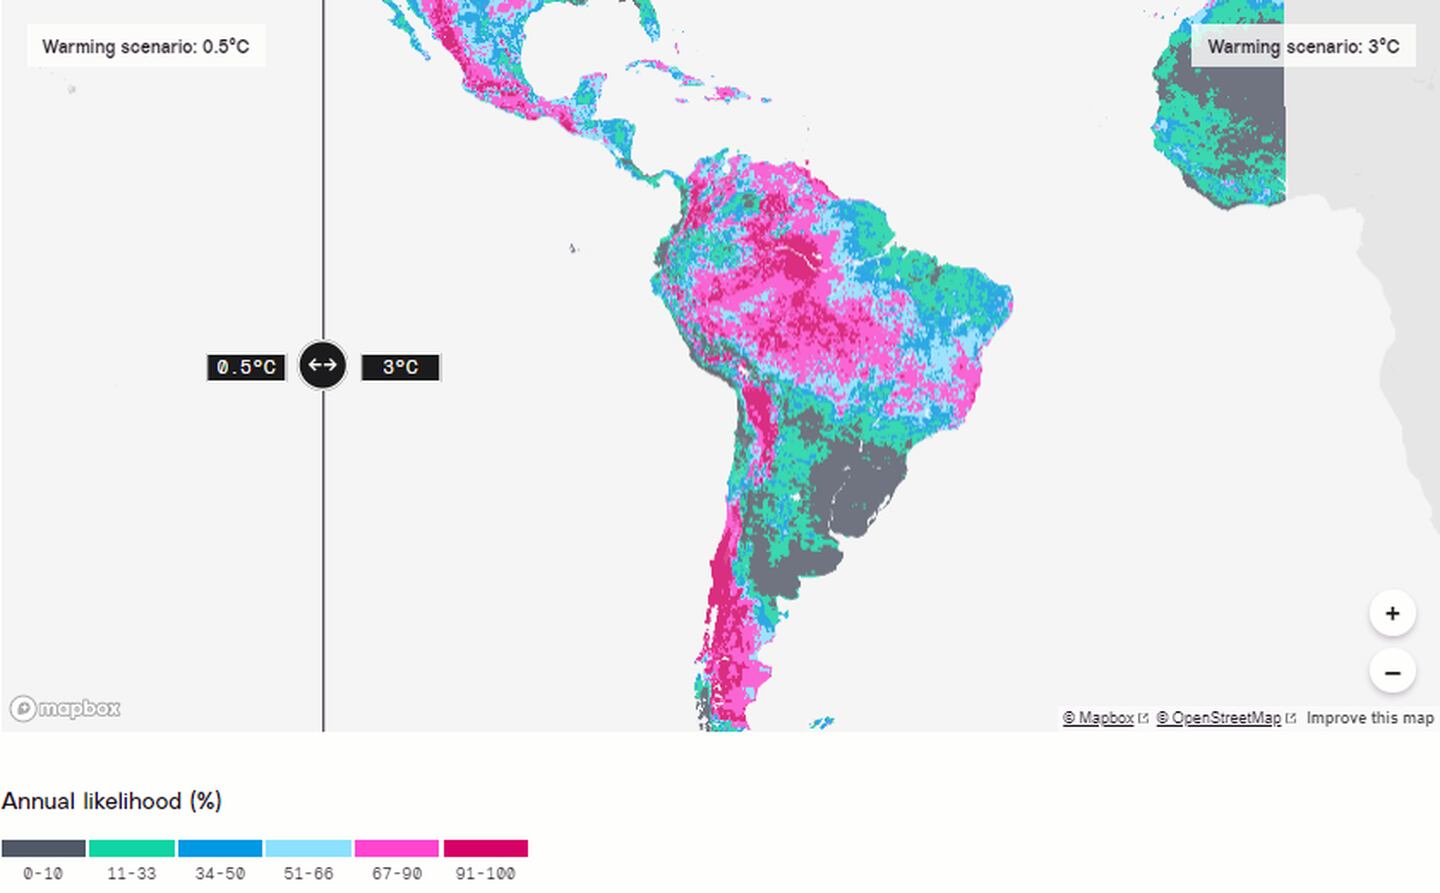 Probabilidad anual de sequía extrema
dfd